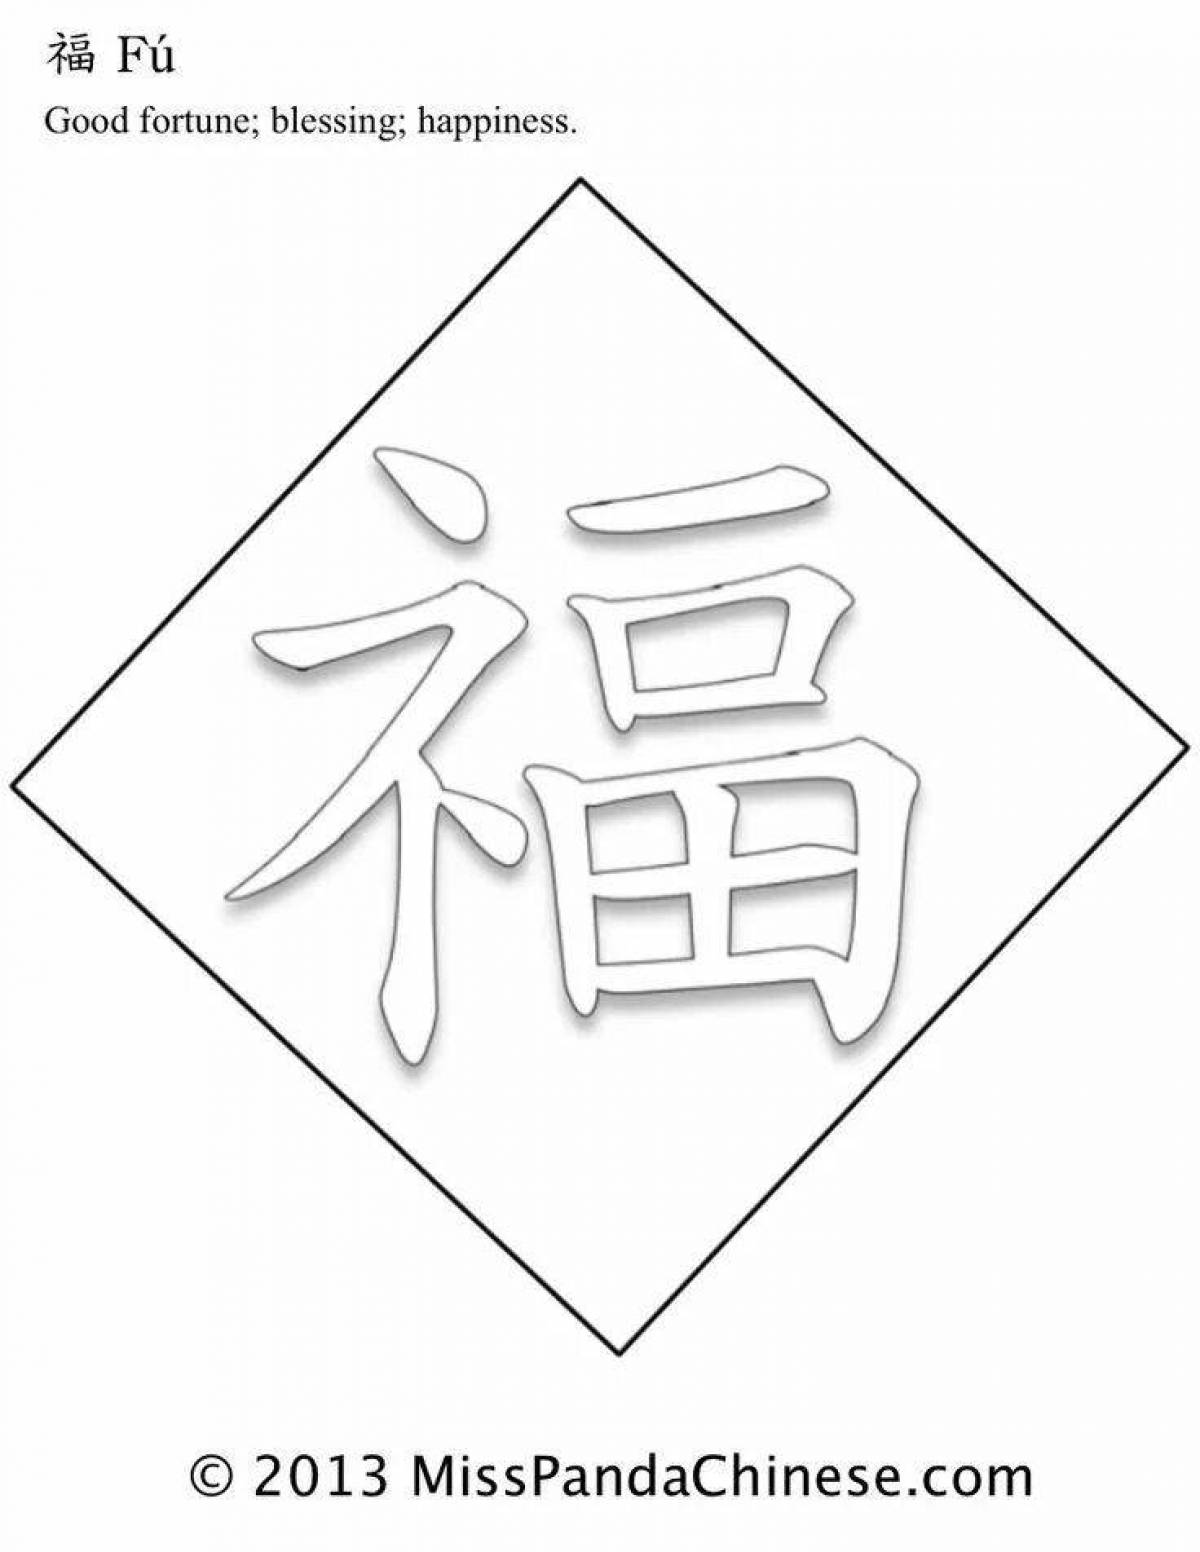 Яркая раскраска китайских иероглифов